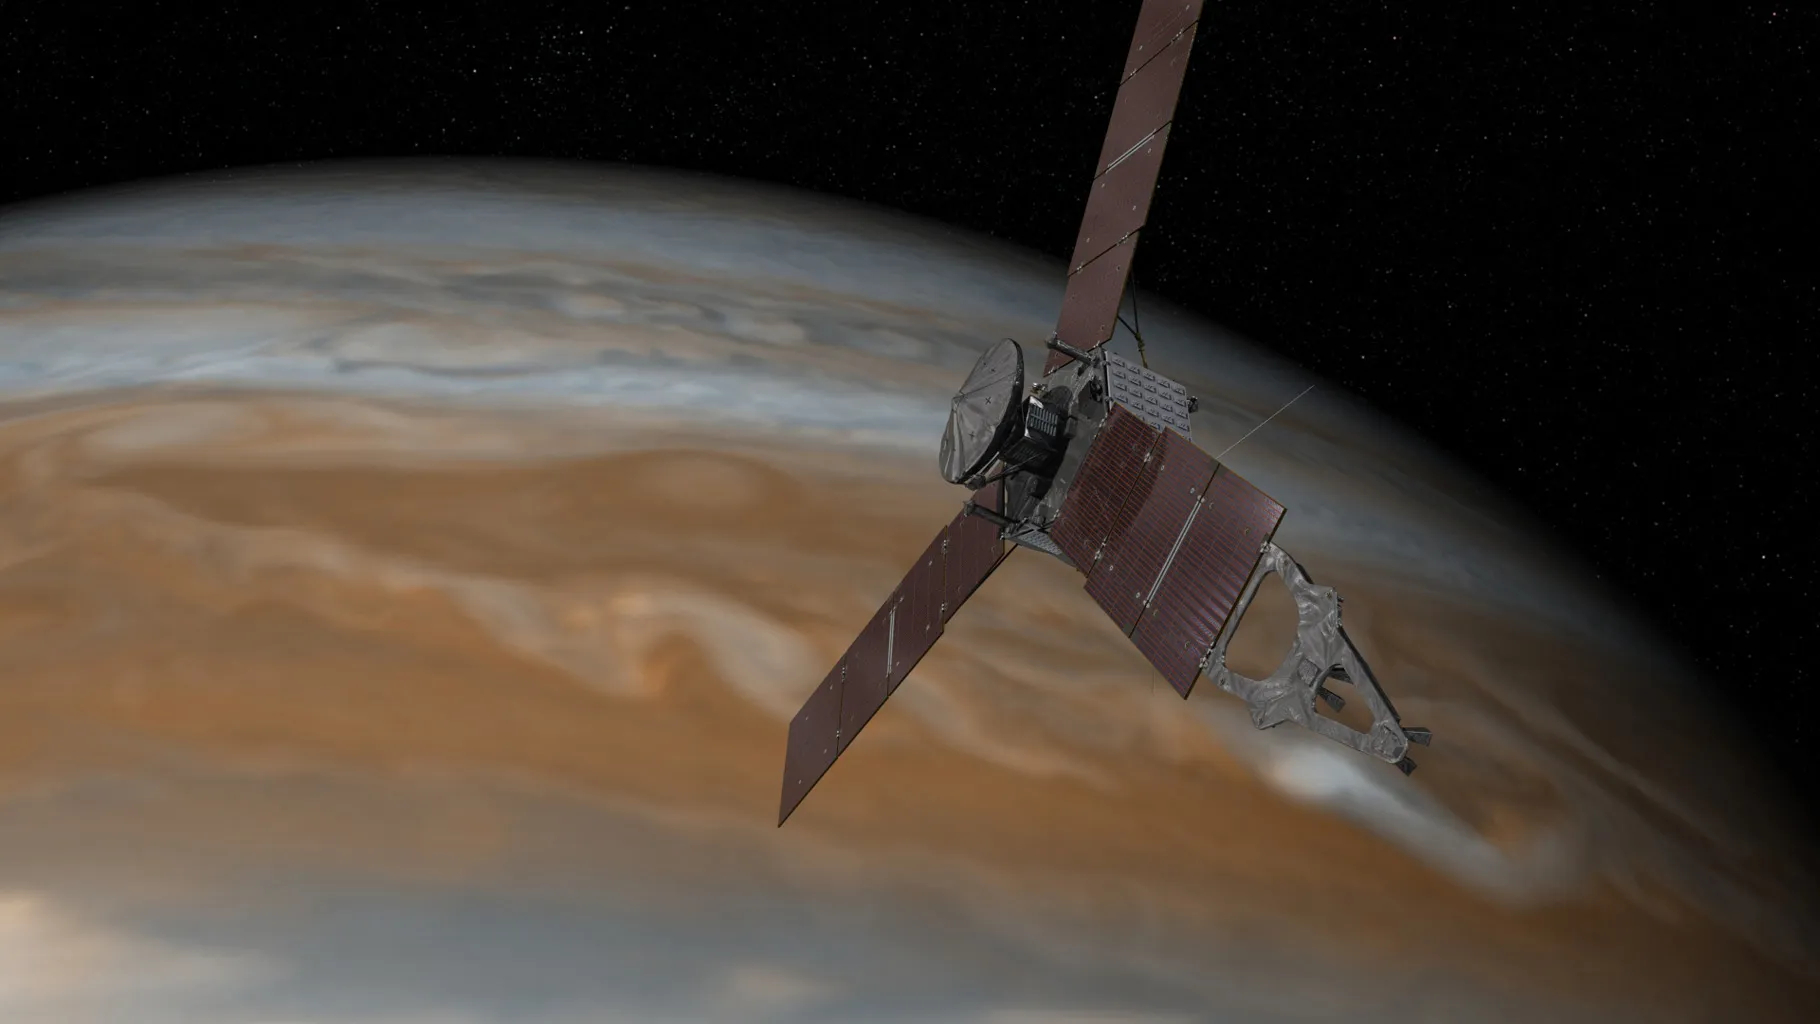 NASA divulga imagem de Júpiter que revela mancha misteriosa no planeta gigante